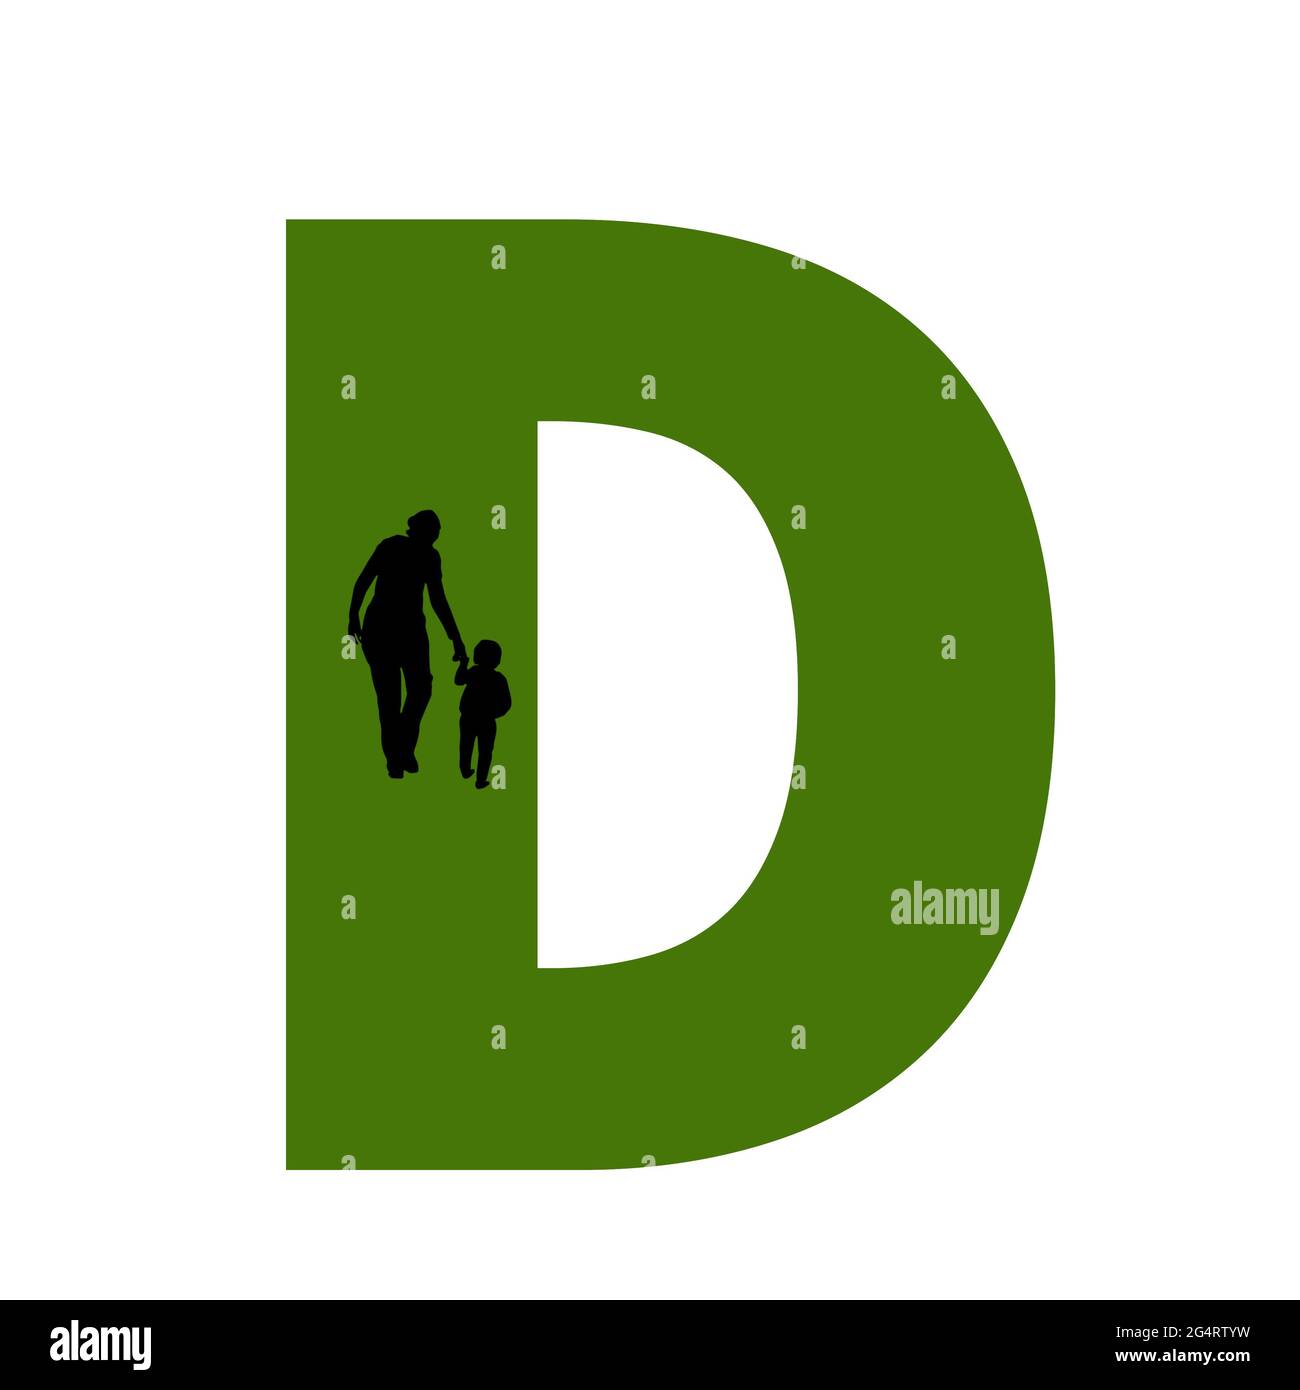 Lettre D de l'alphabet avec silhouette d'une mère et d'un enfant marchant, en vert et noir Banque D'Images